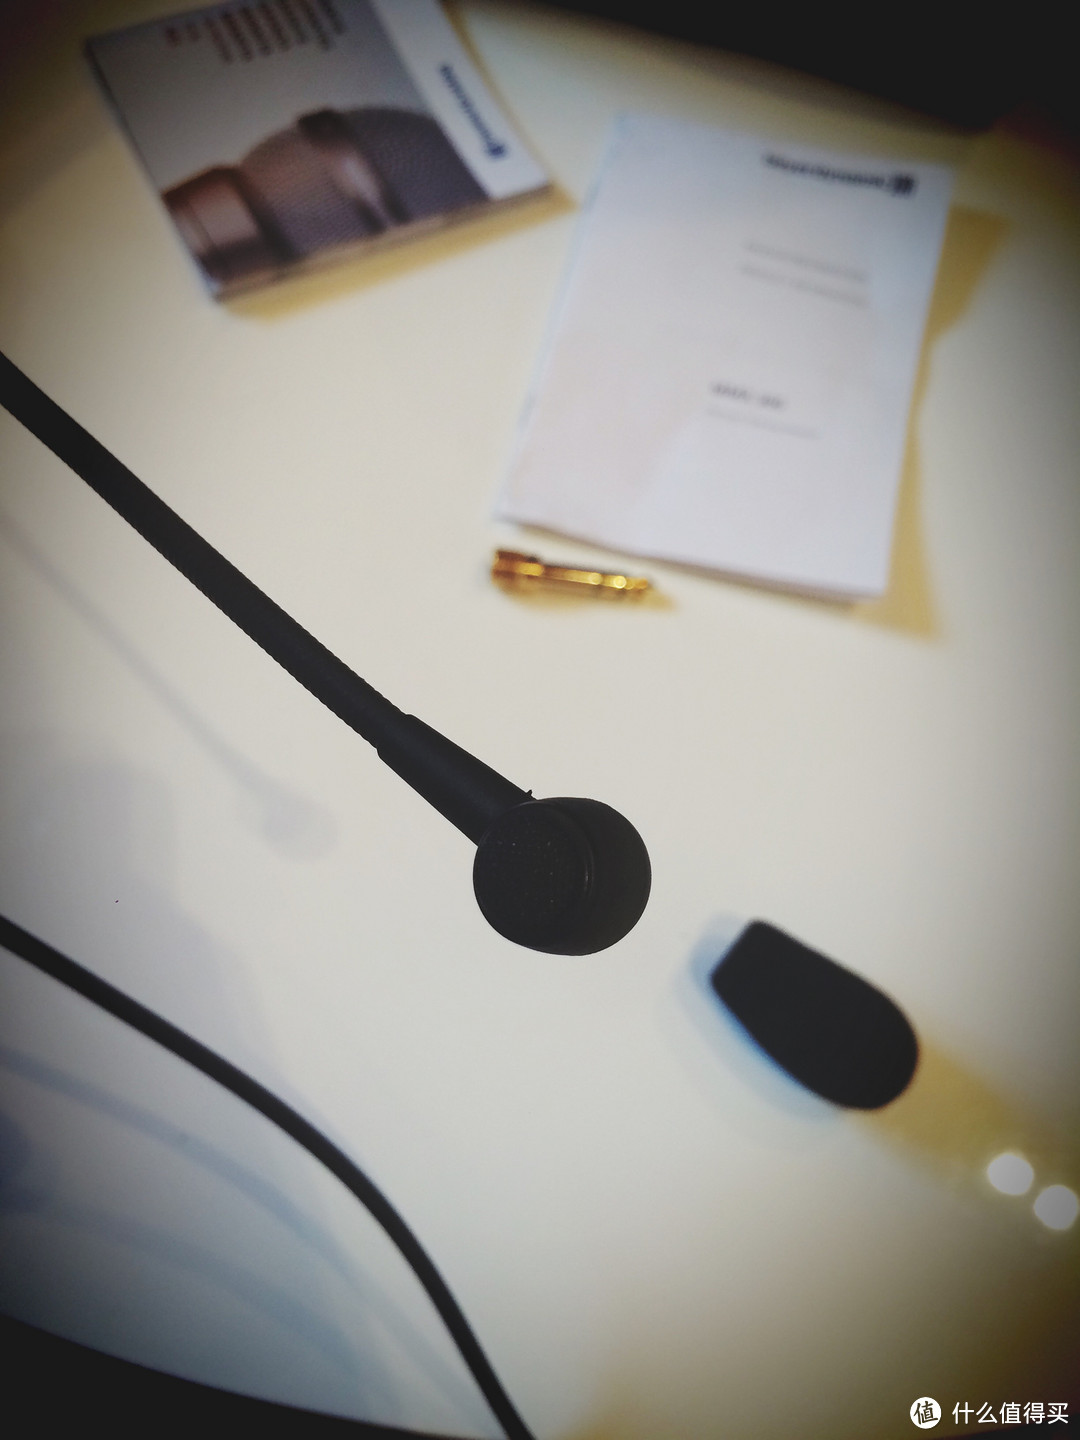 一步到位：beyerdynamic 拜亚动力 MMX300 亚耳式头戴 游戏耳机 （带耳麦）开箱及使用感受